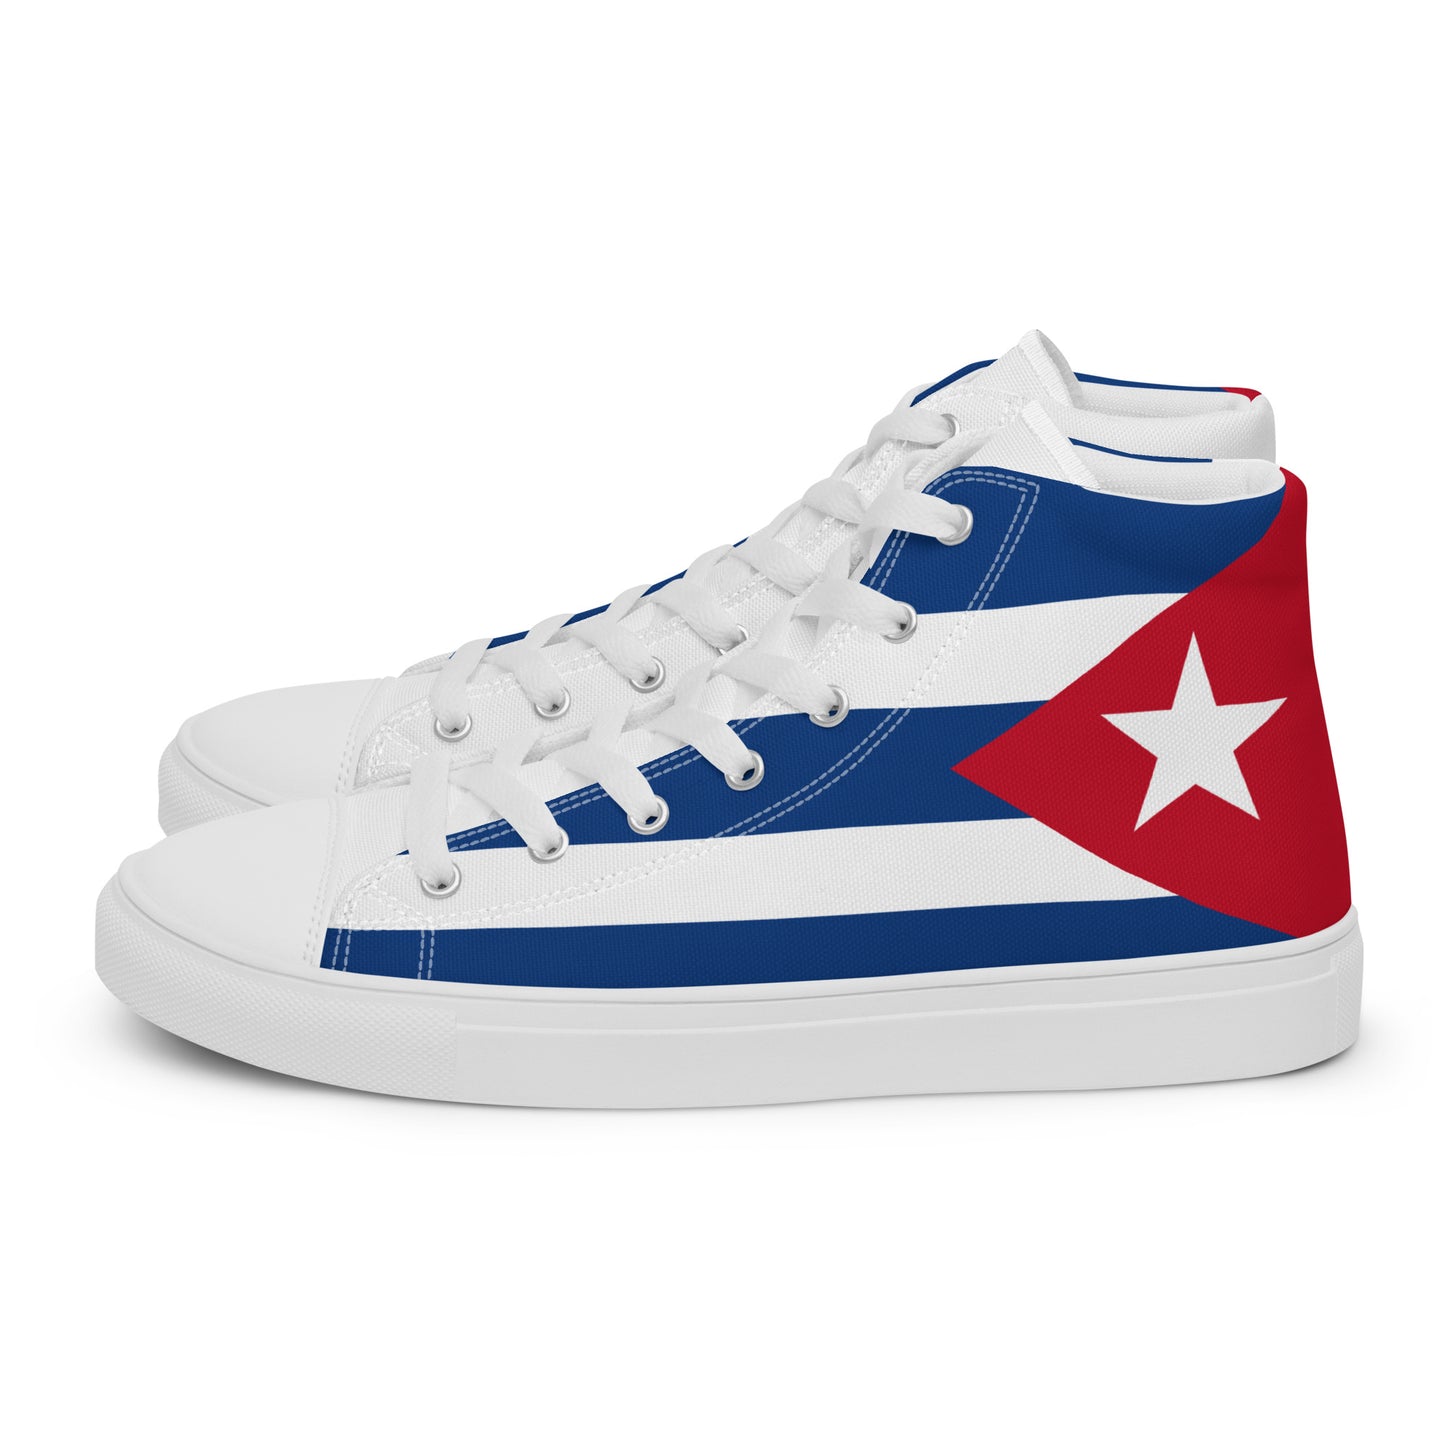 Cuba - Women - Bandera - High top shoes